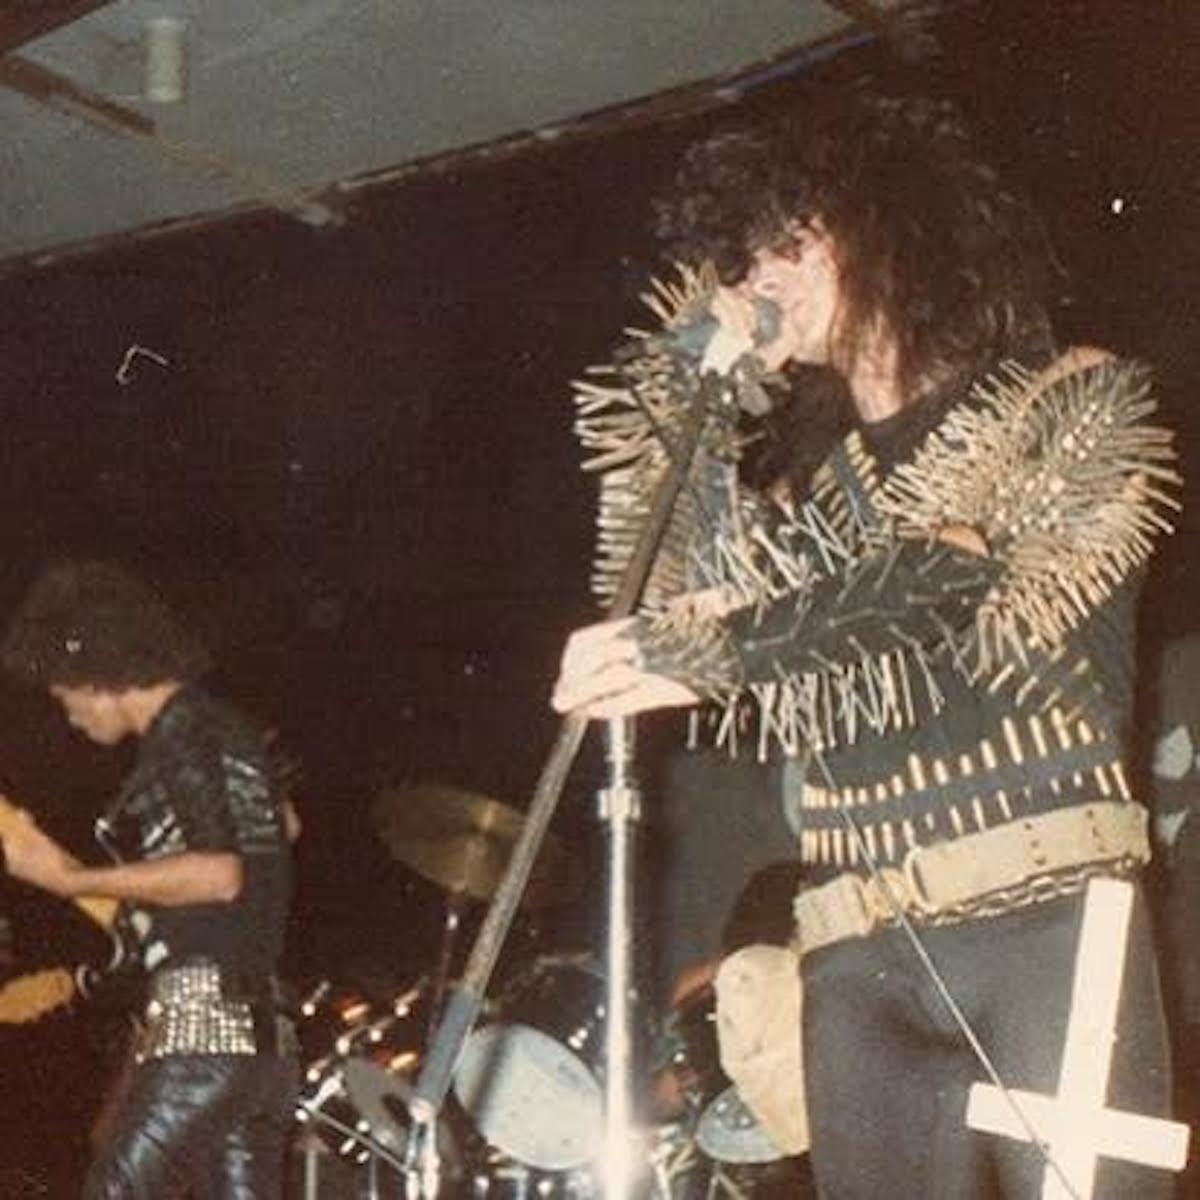 1980s hair metal